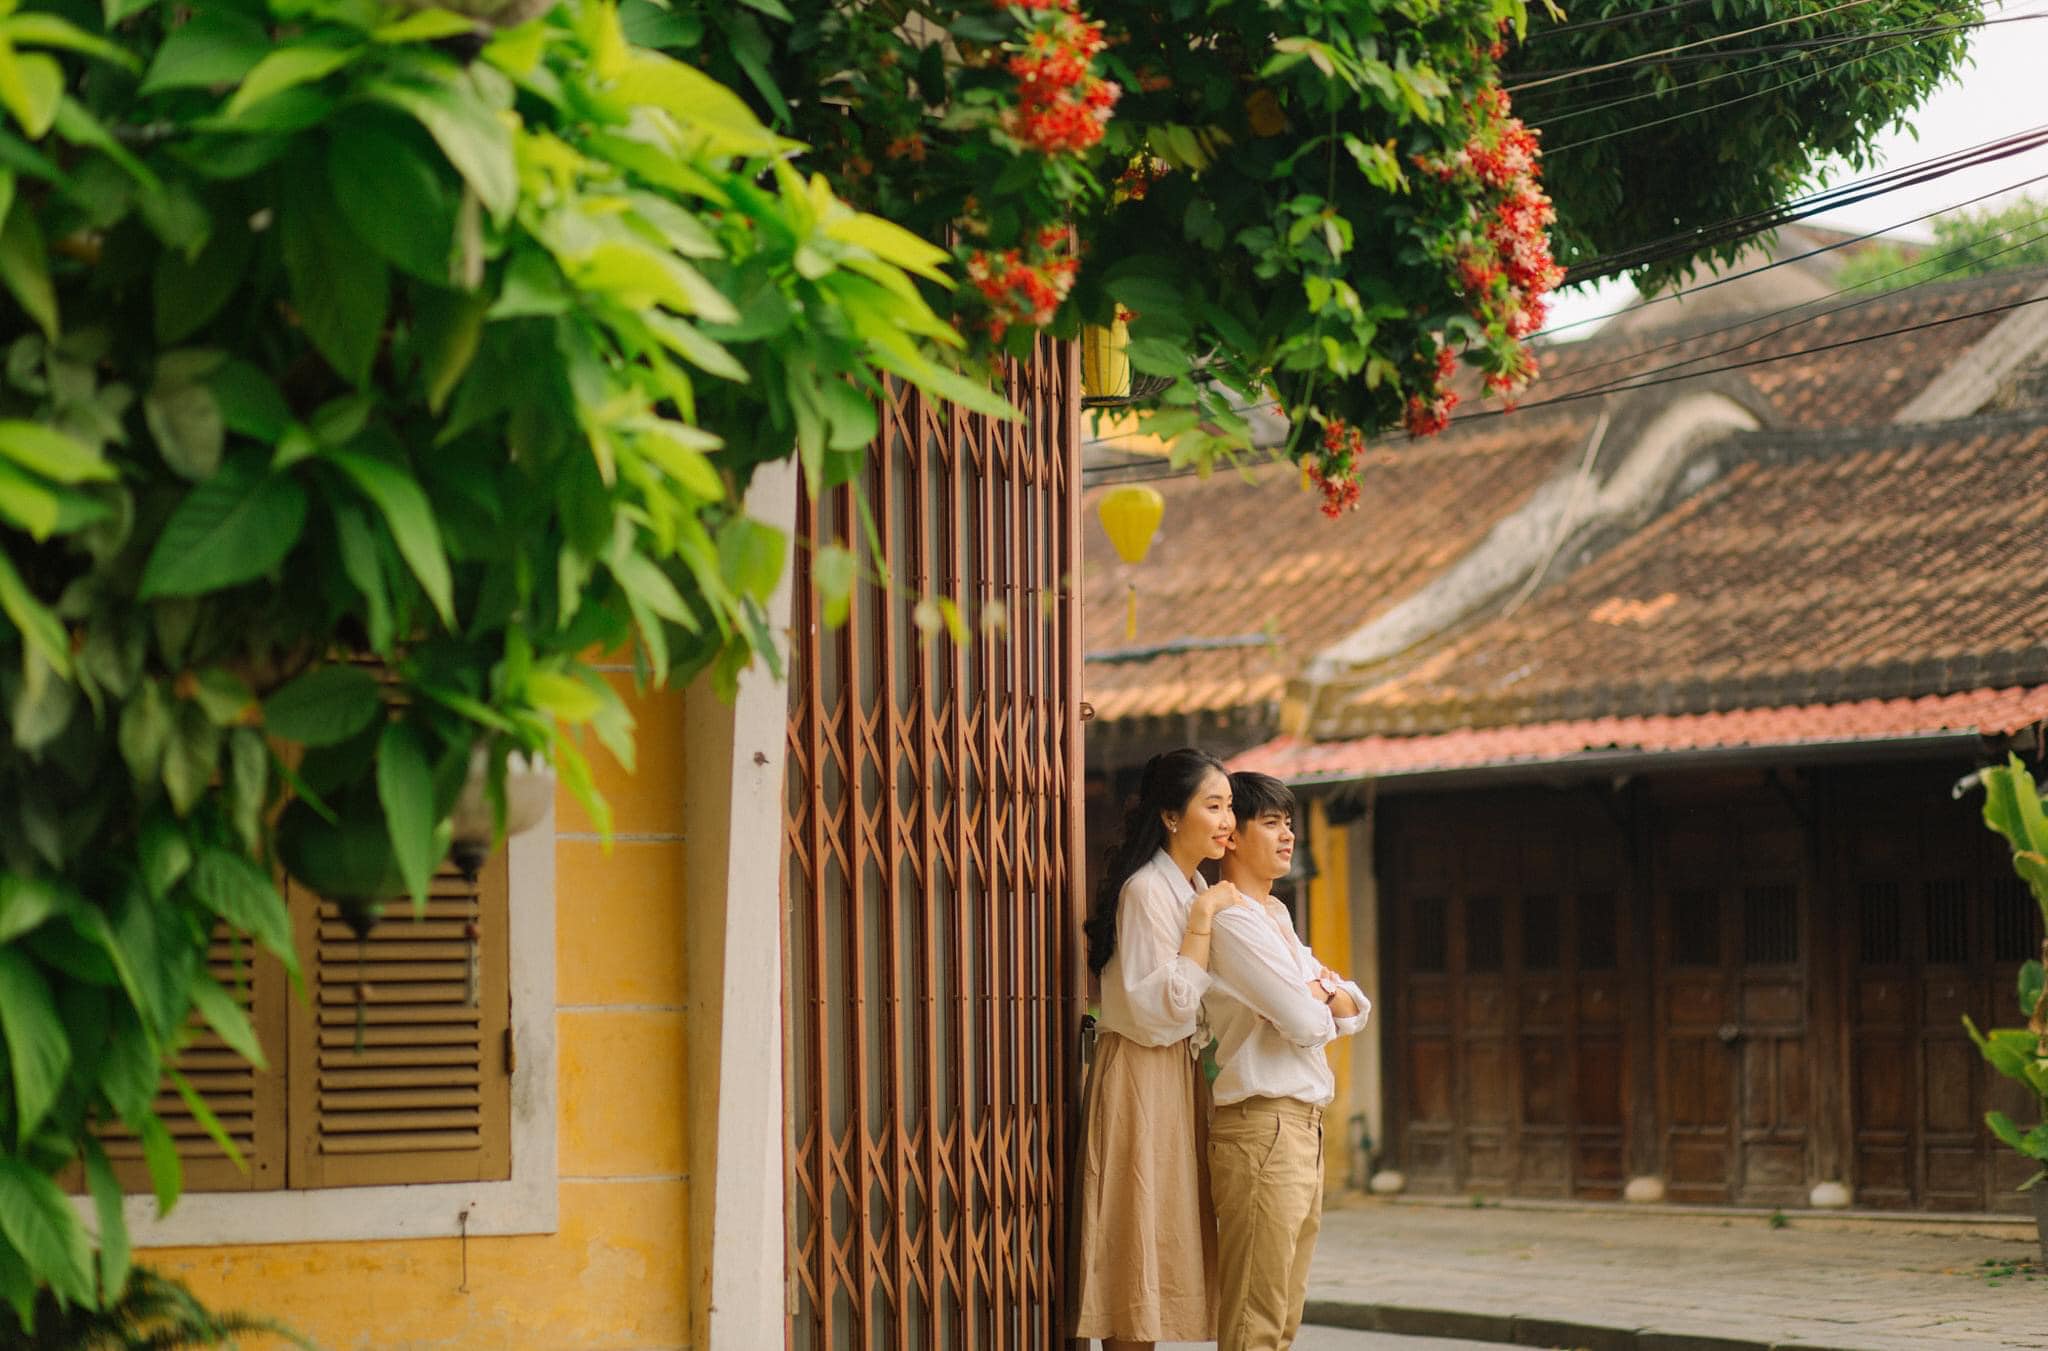 Lãng mạn phố cổ Hội An qua bộ ảnh couple đẹp như mơ của photographer Bùi Huy Khang 6